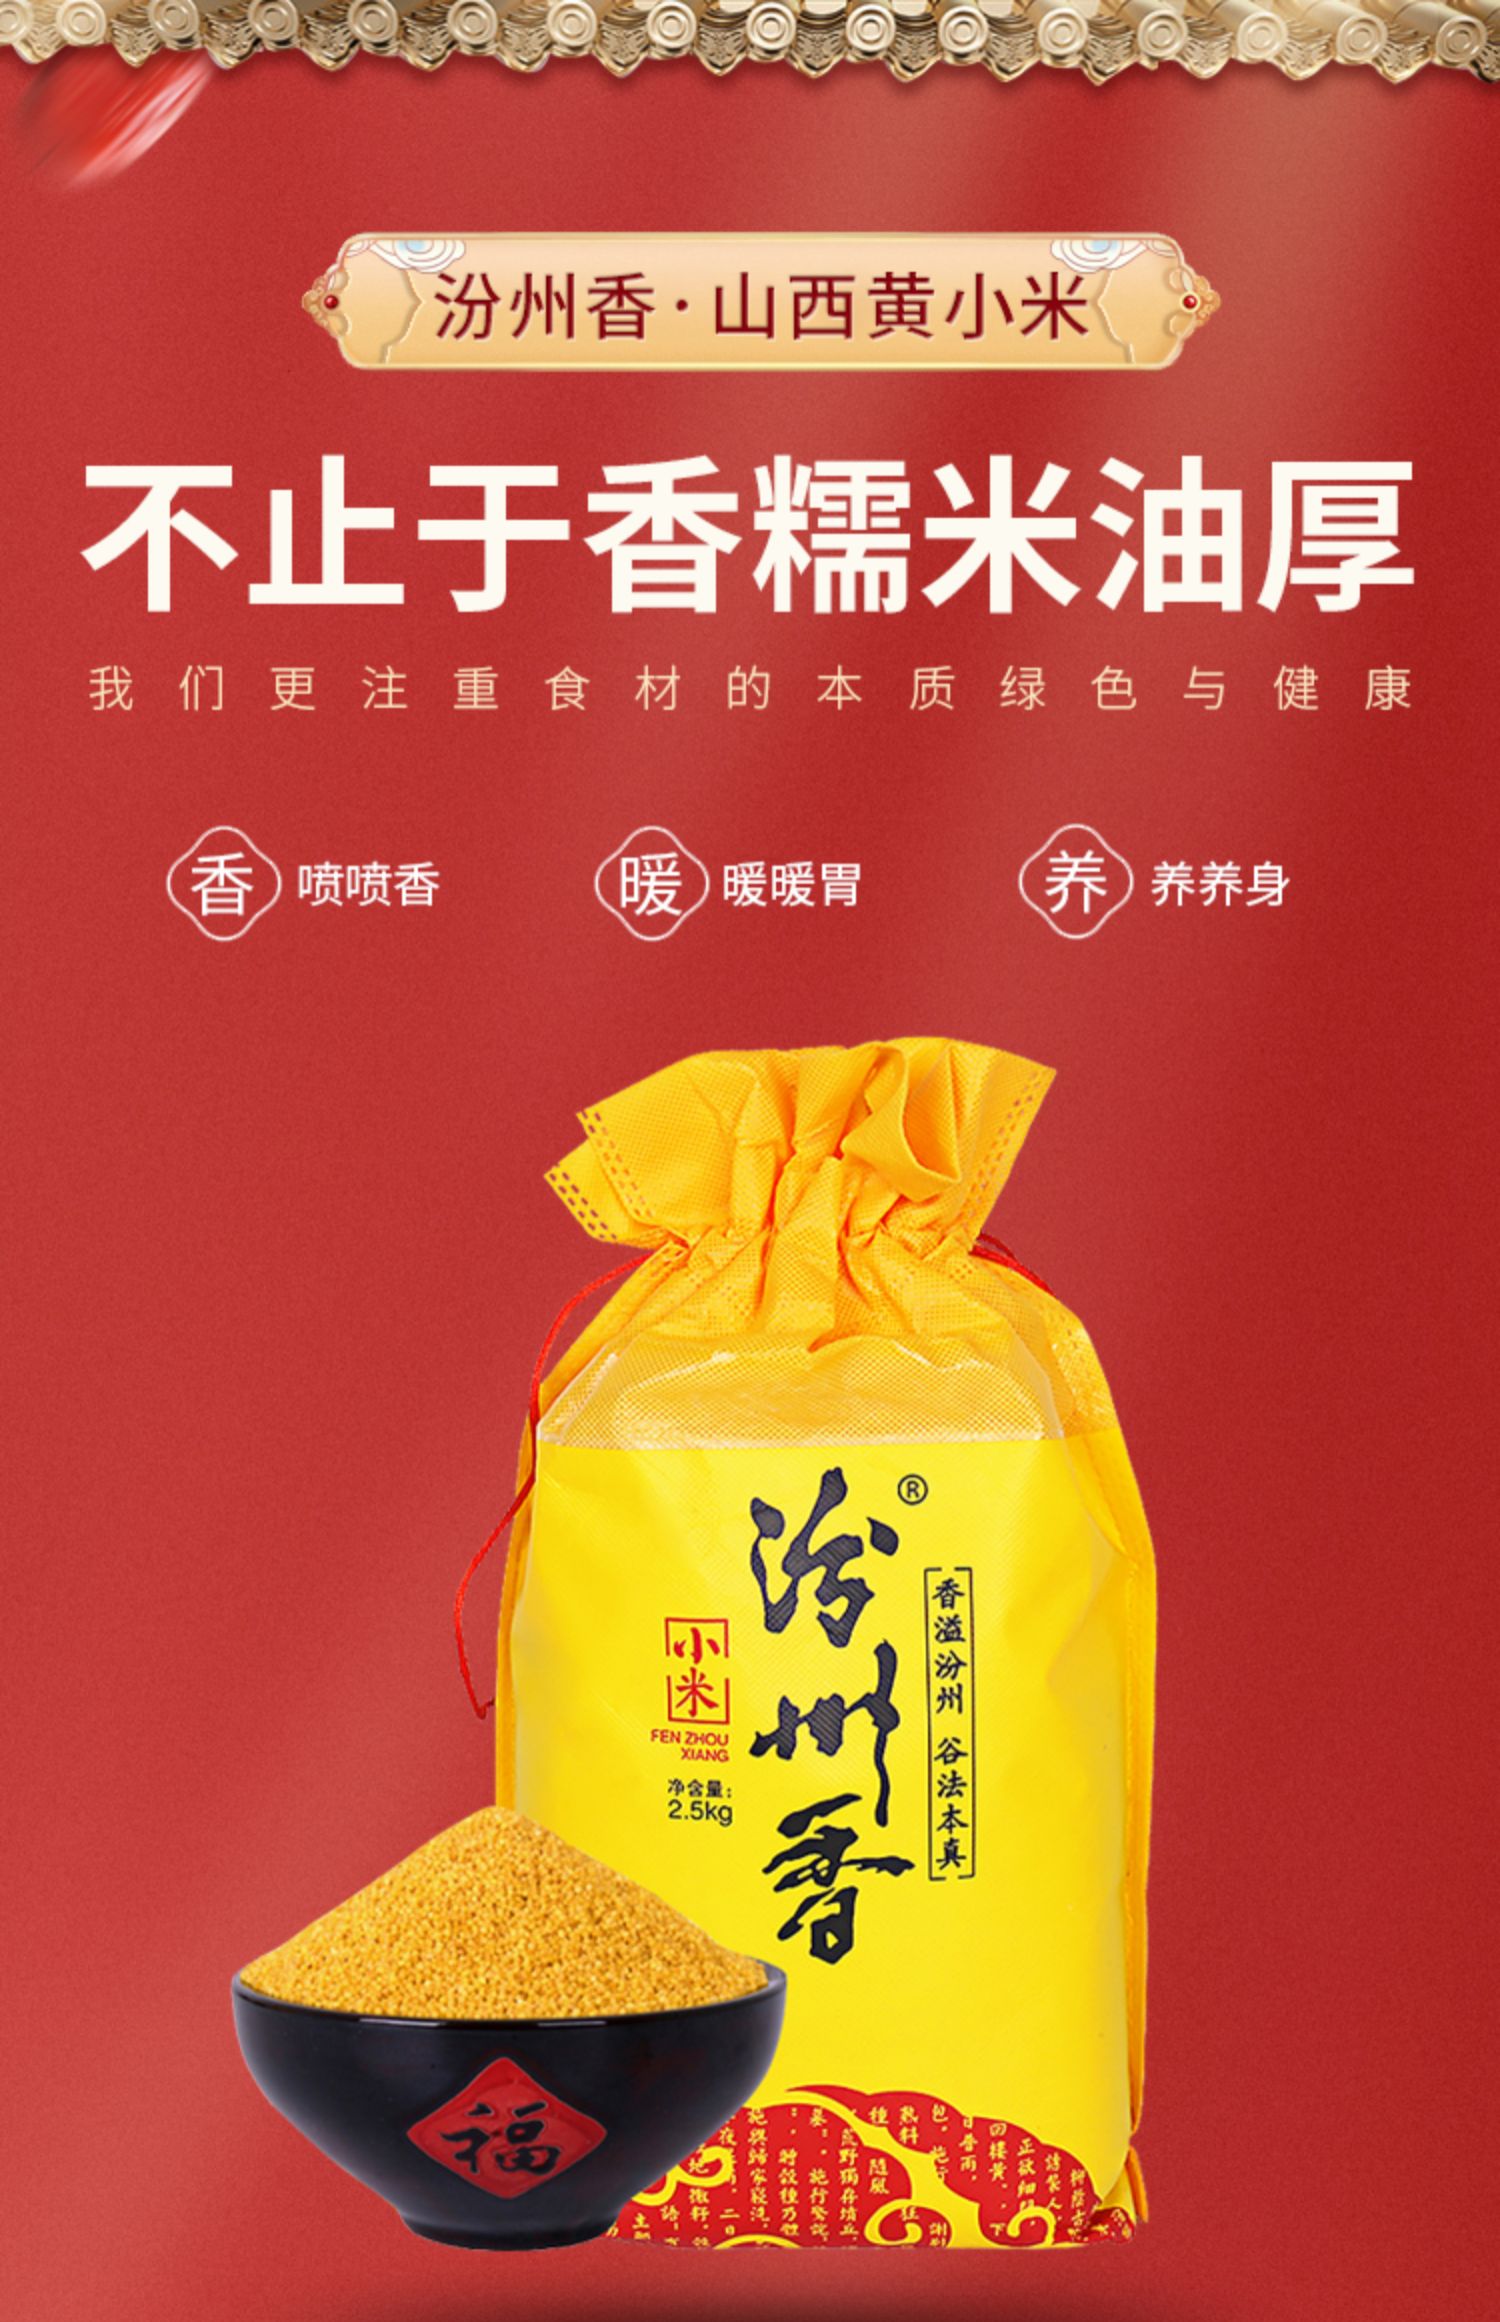 【汾州香】山西特产农家黄小米5斤